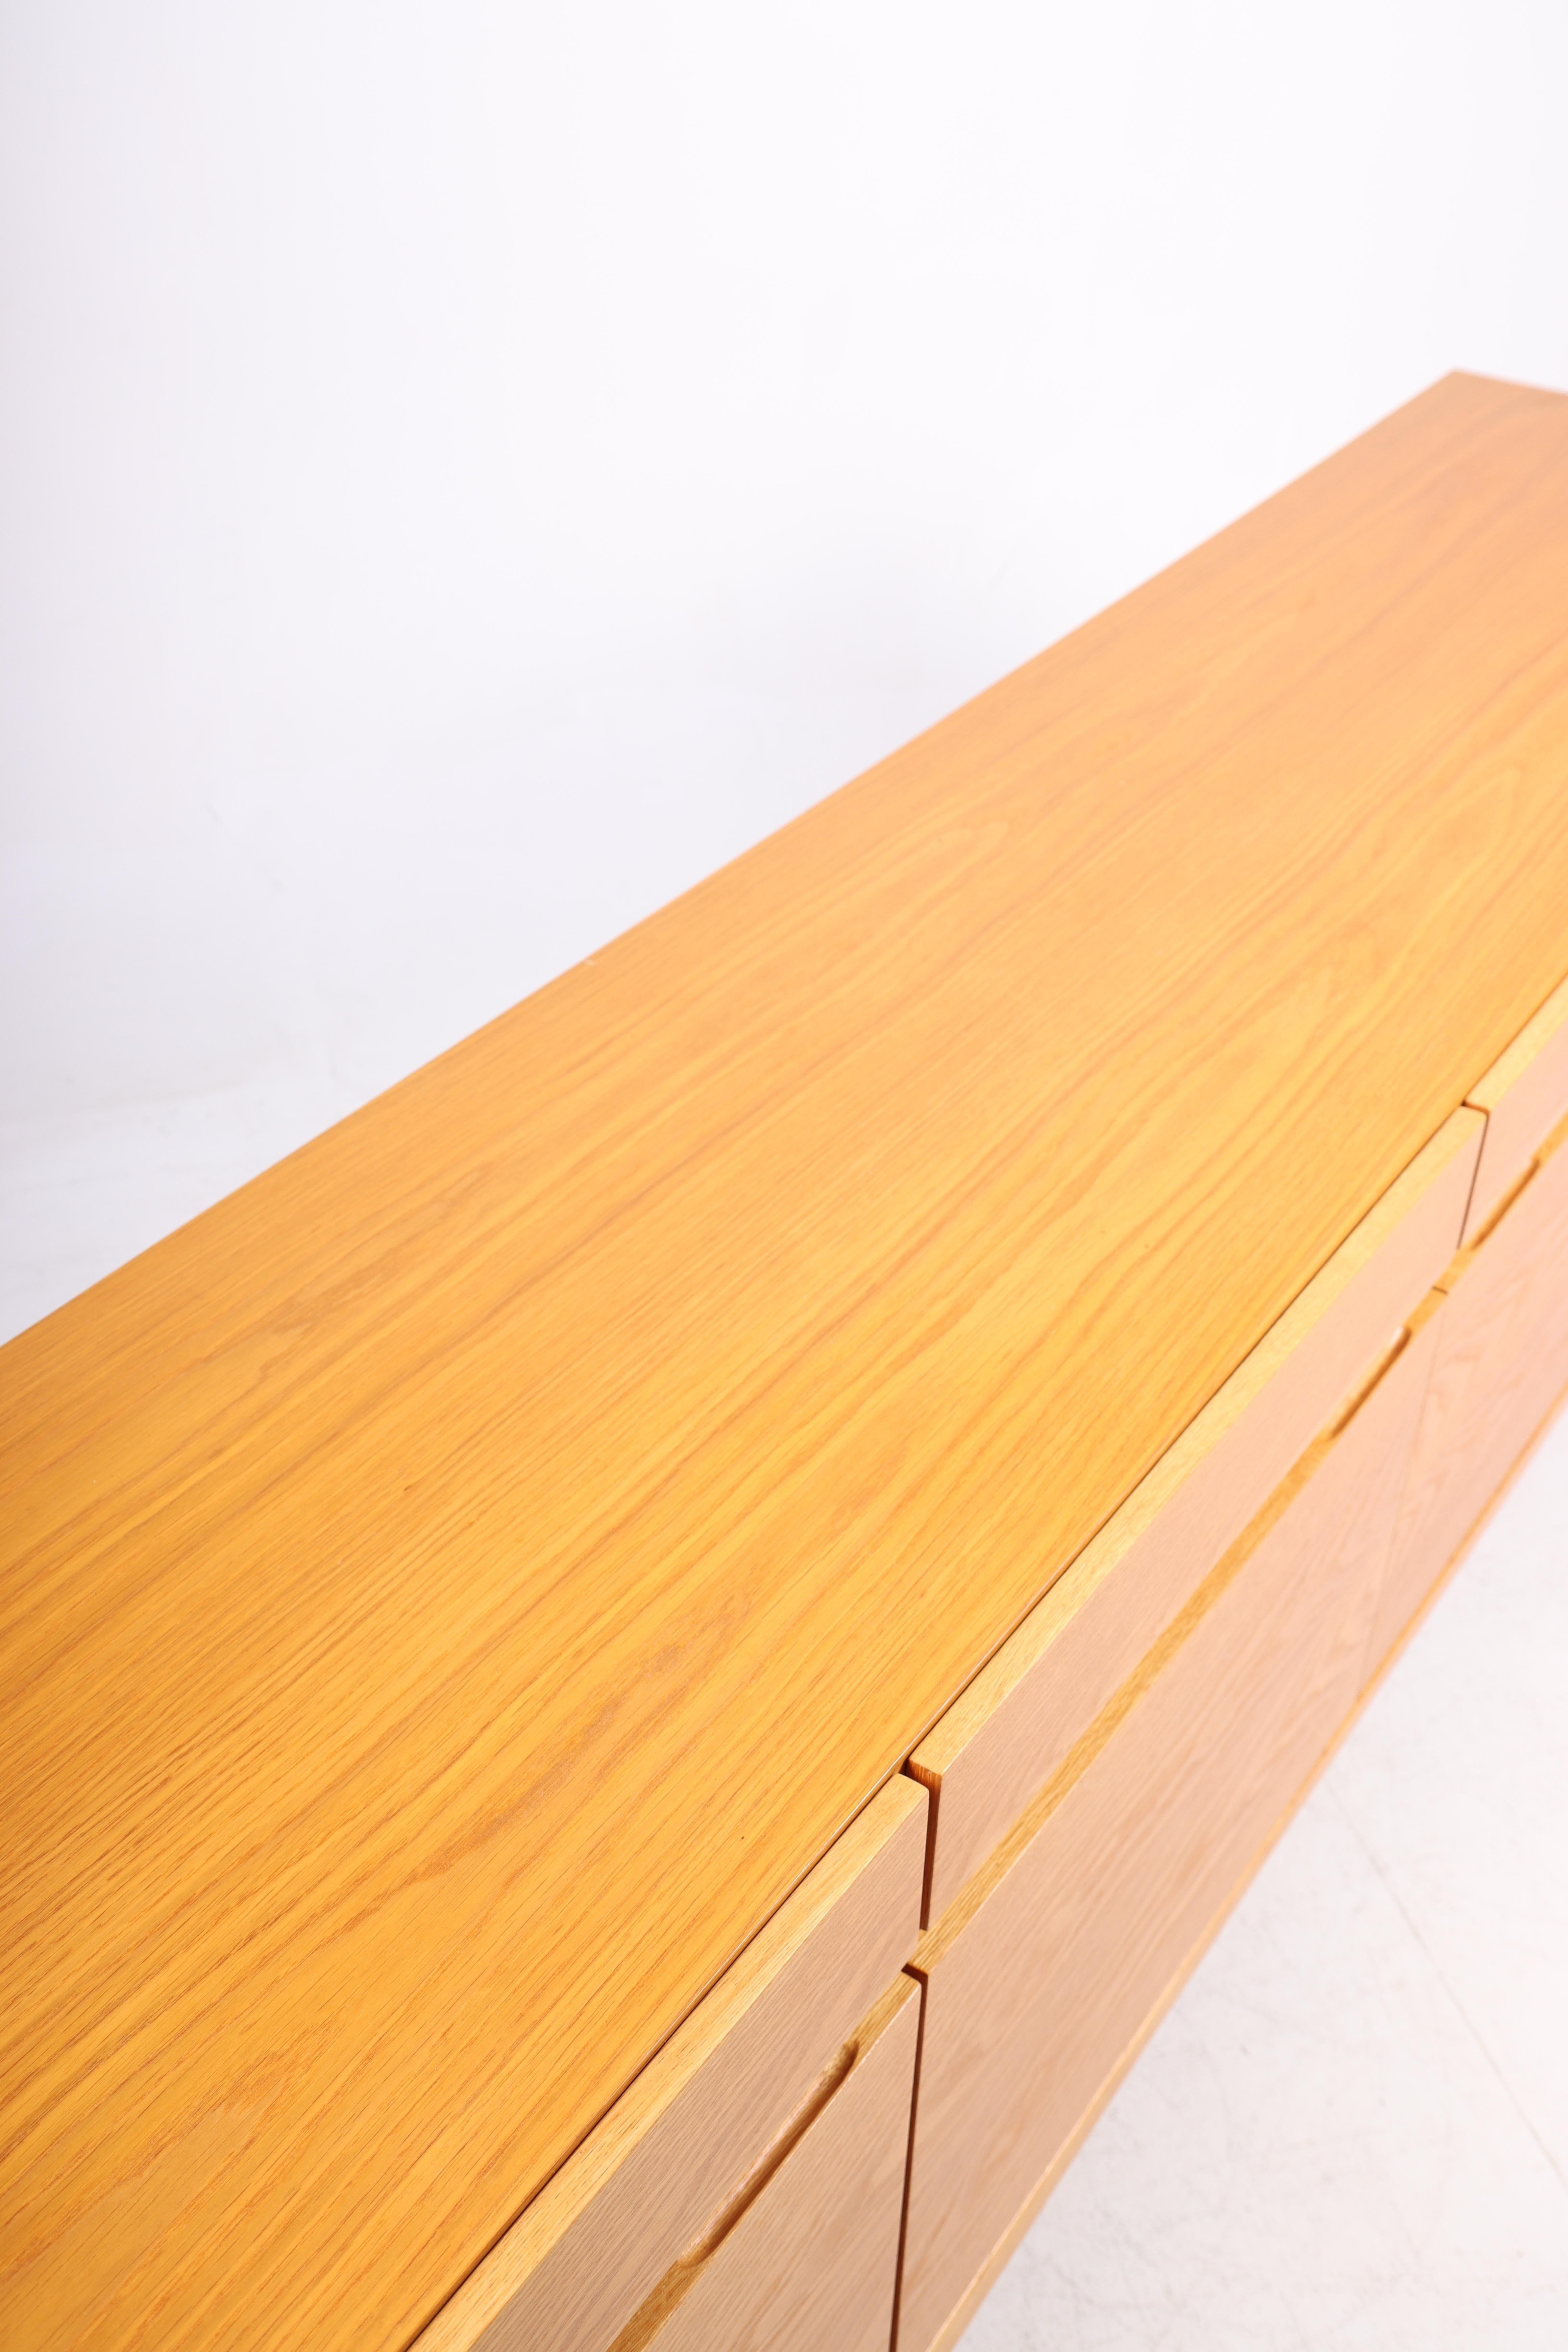 Danish Midcentury Sideboard in Oak Designed by Ib Kofod-Larsen, 1960s For Sale 4